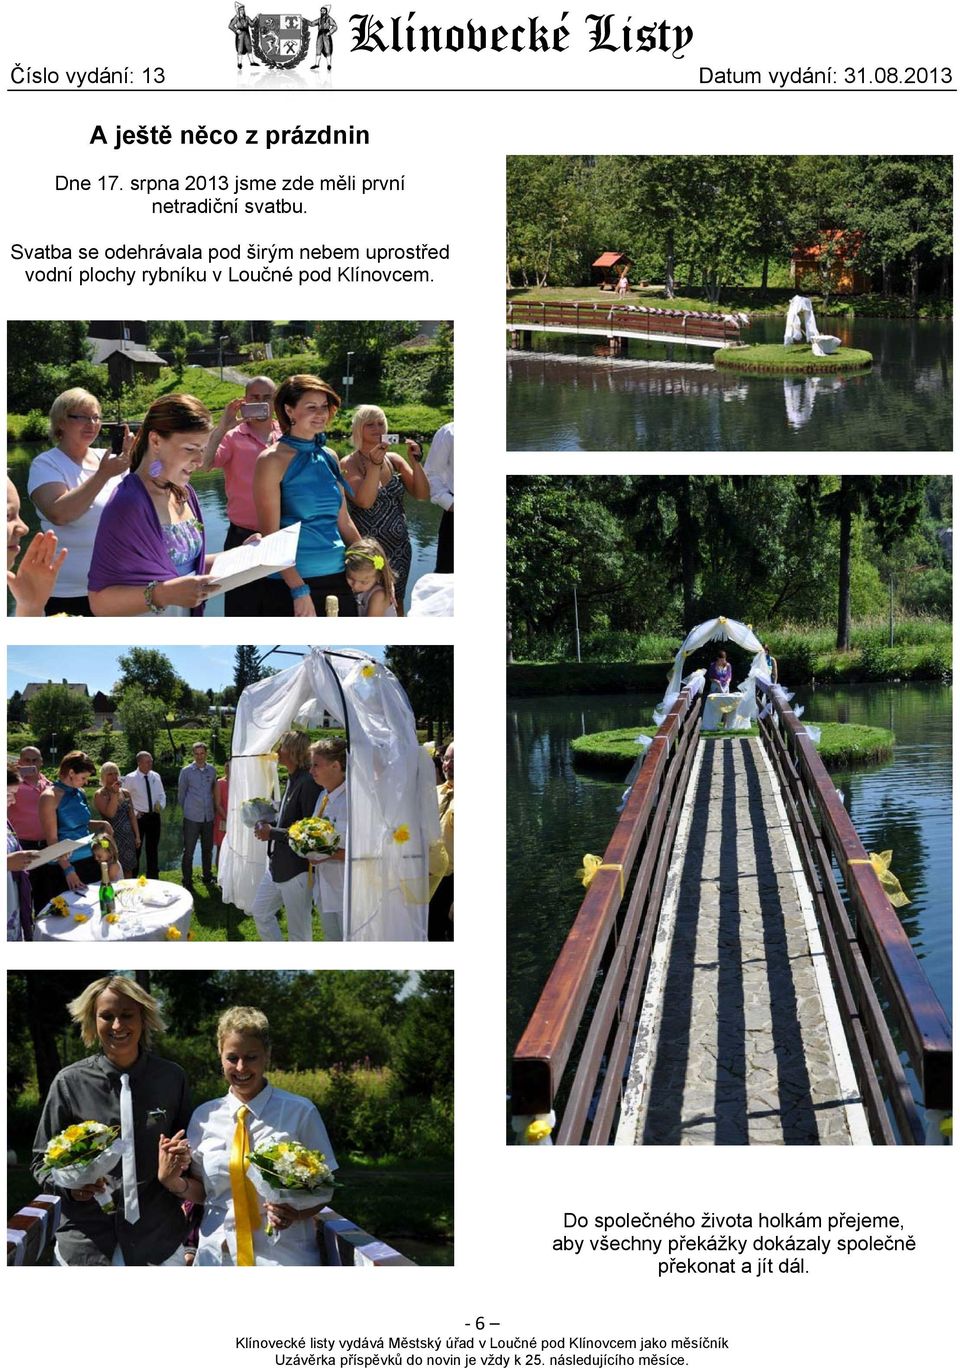 Svatba se odehrávala pod širým nebem uprostřed vodní plochy rybníku